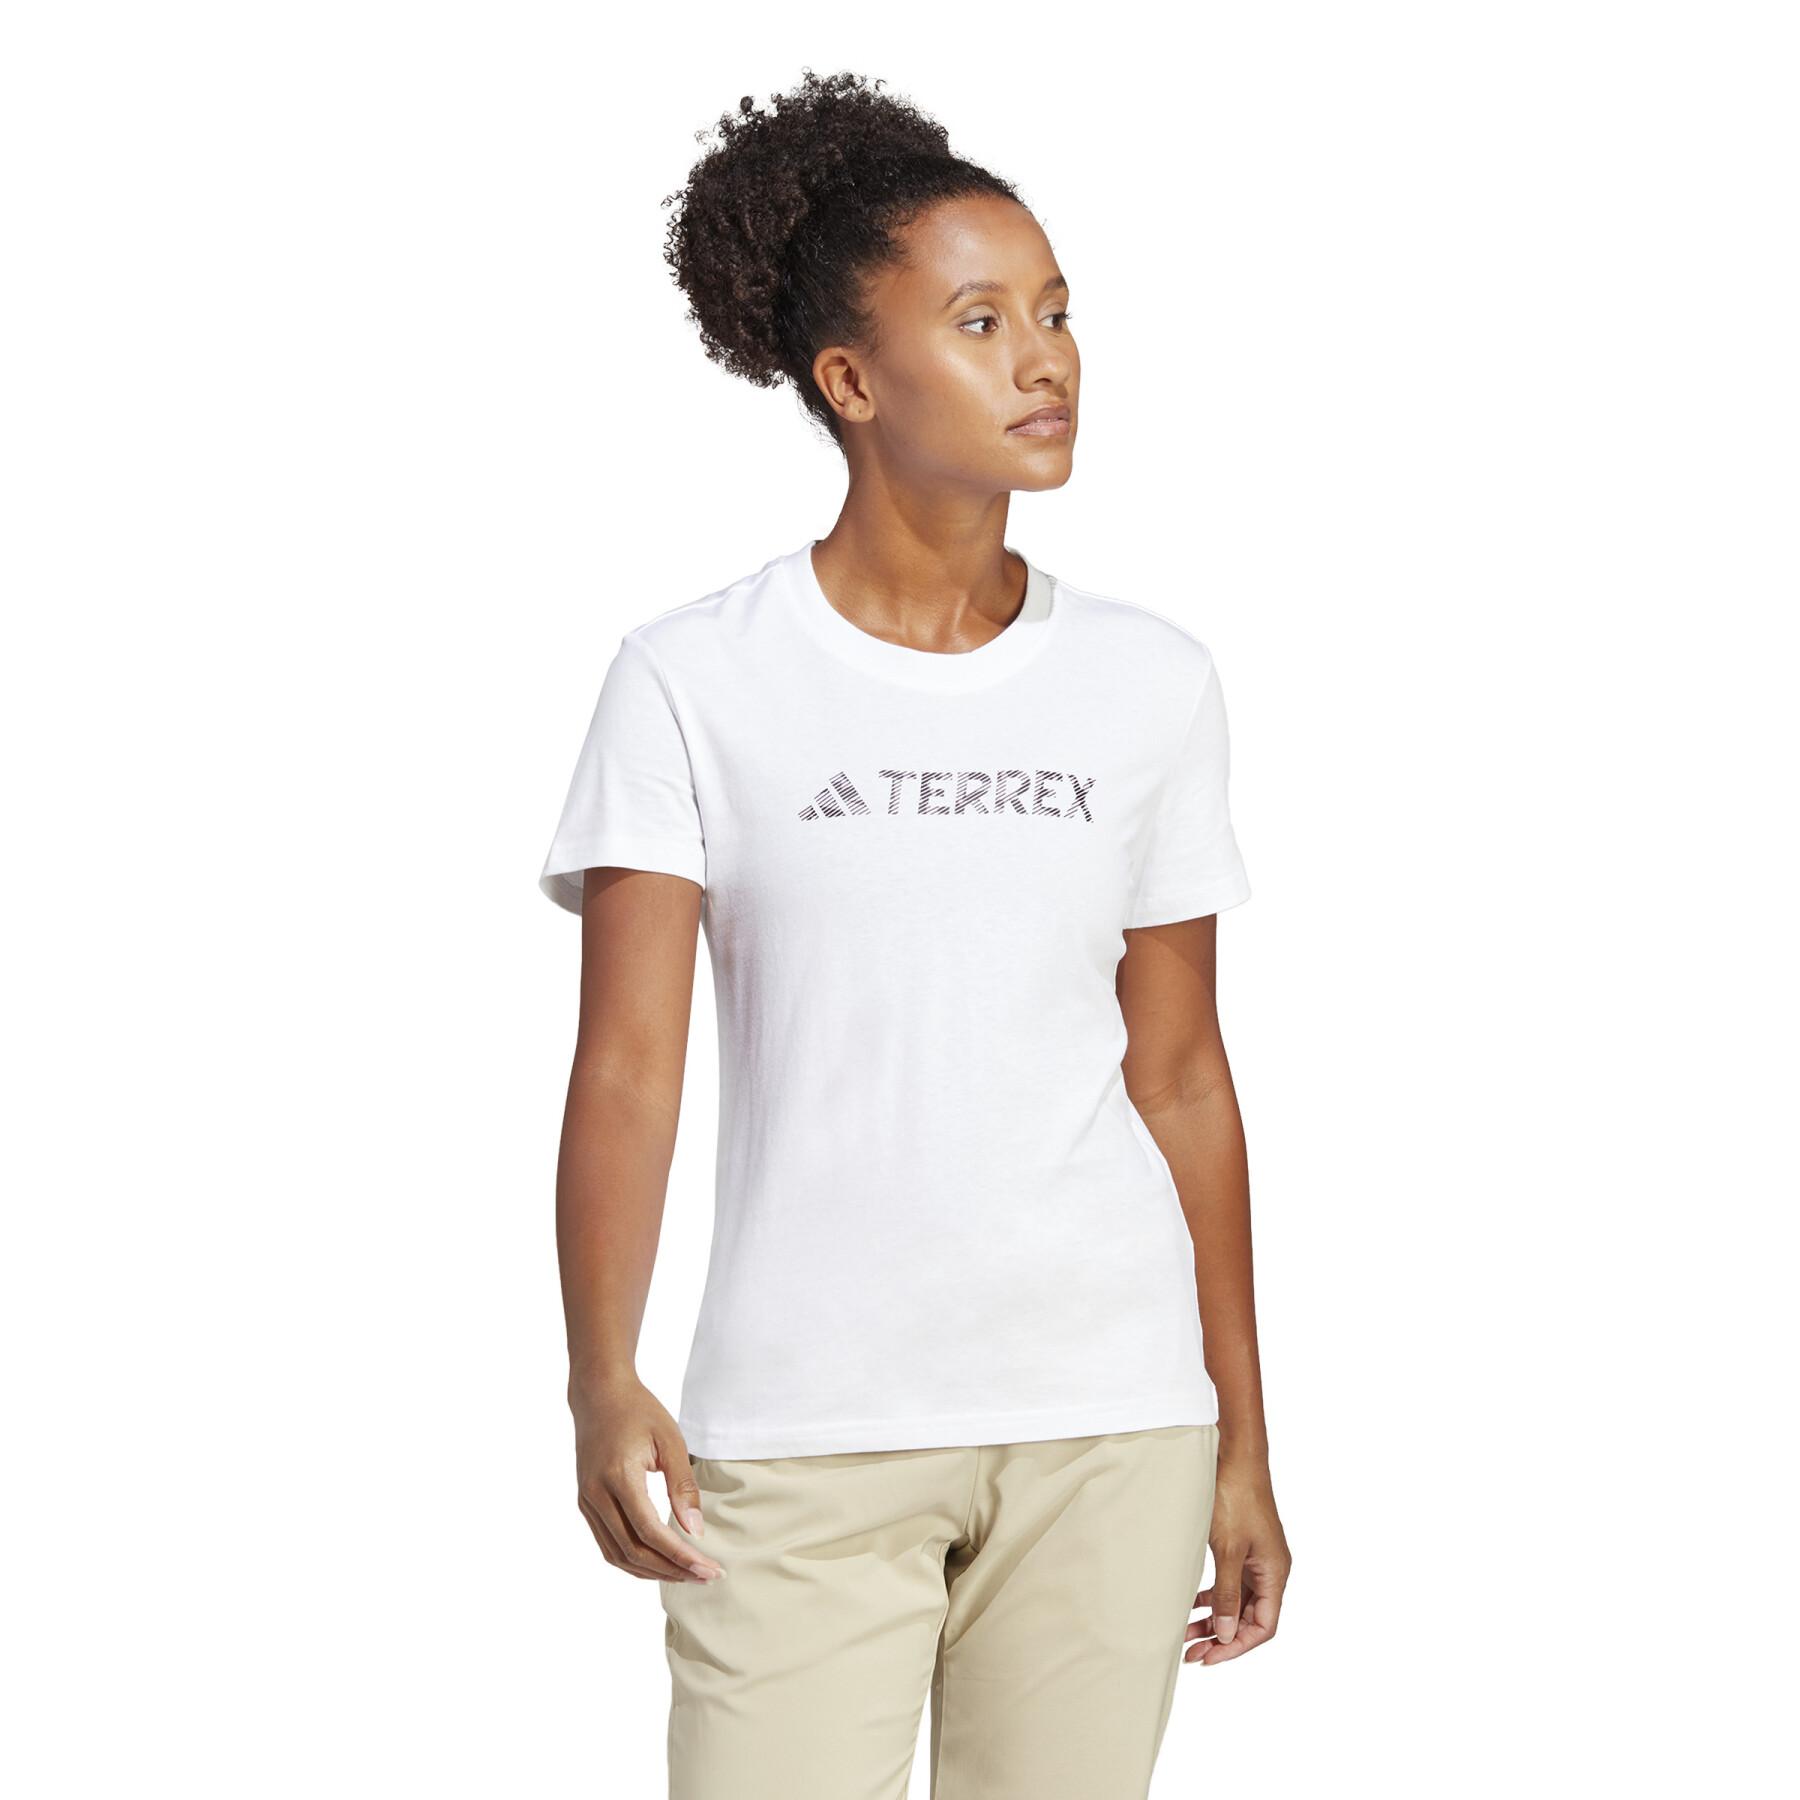 Camiseta de mujer adidas Terrex Classic Logo